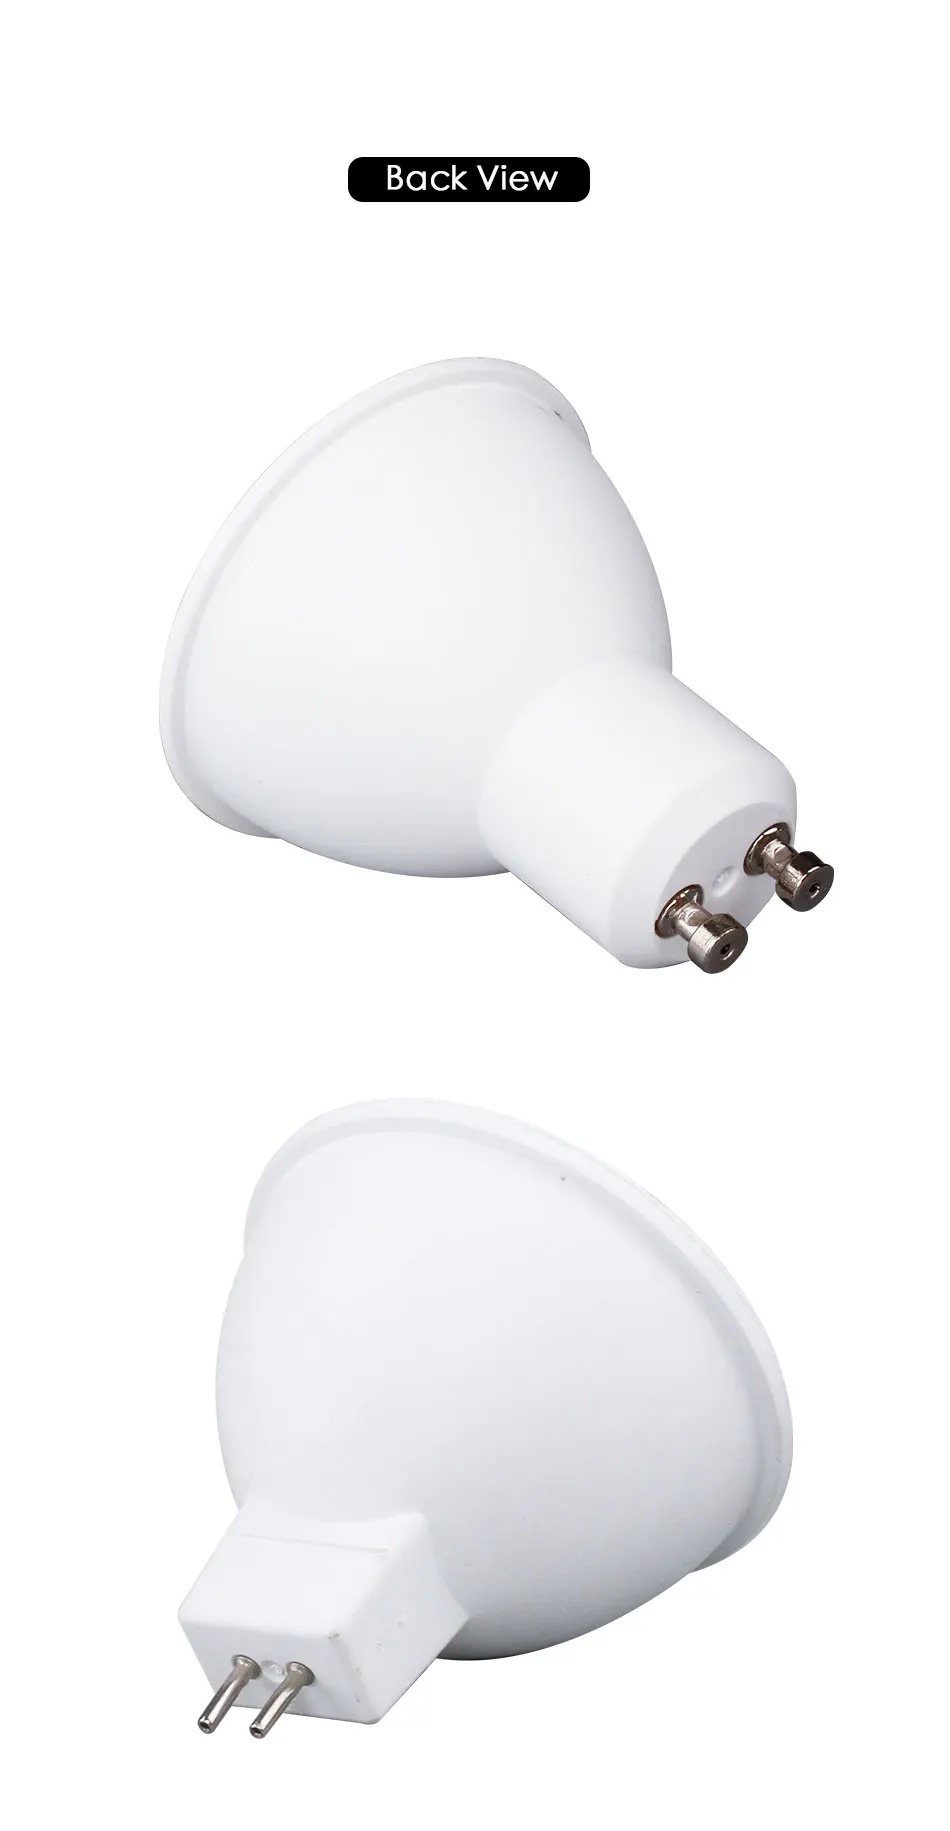 Светодиодный точечный светильник 6 Вт MR16 GU10 SMD 2835 lampara 12 в 110 В 220 В комнатный энергосберегающий настольный домашний декоративный Ампульный диодный светильник